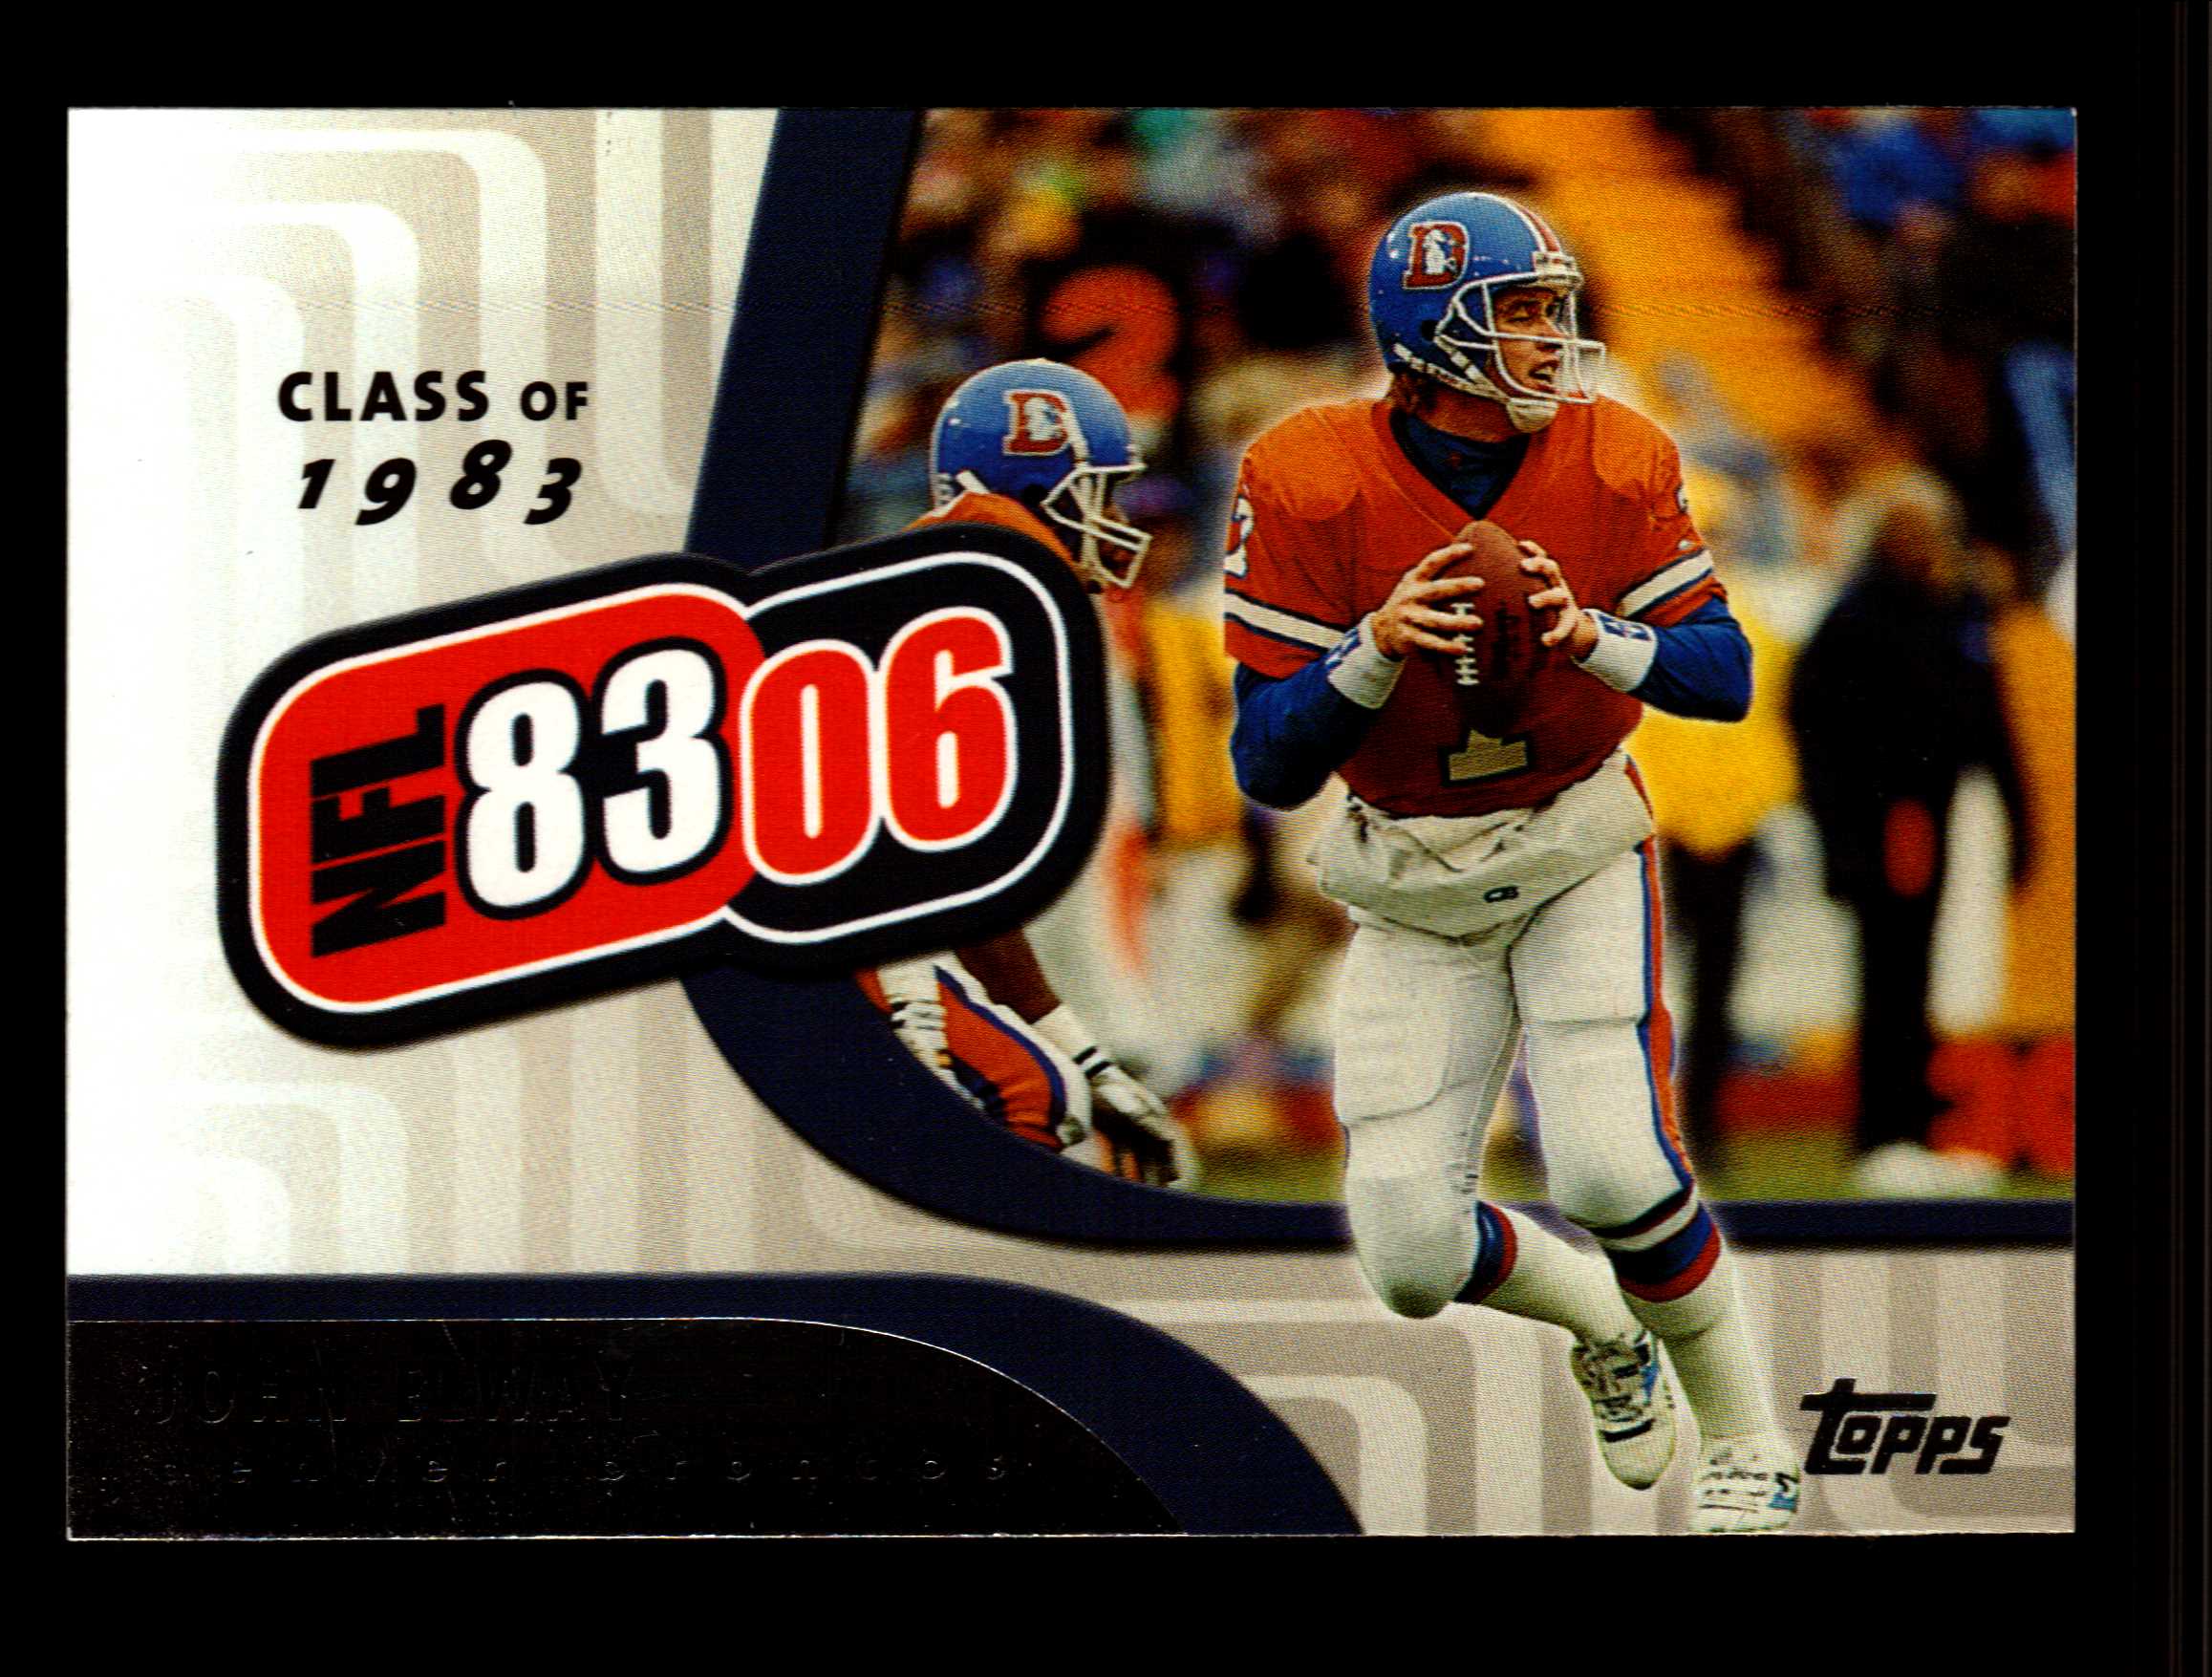 2006 Topps NFL 8306 #NFL1 John Elway